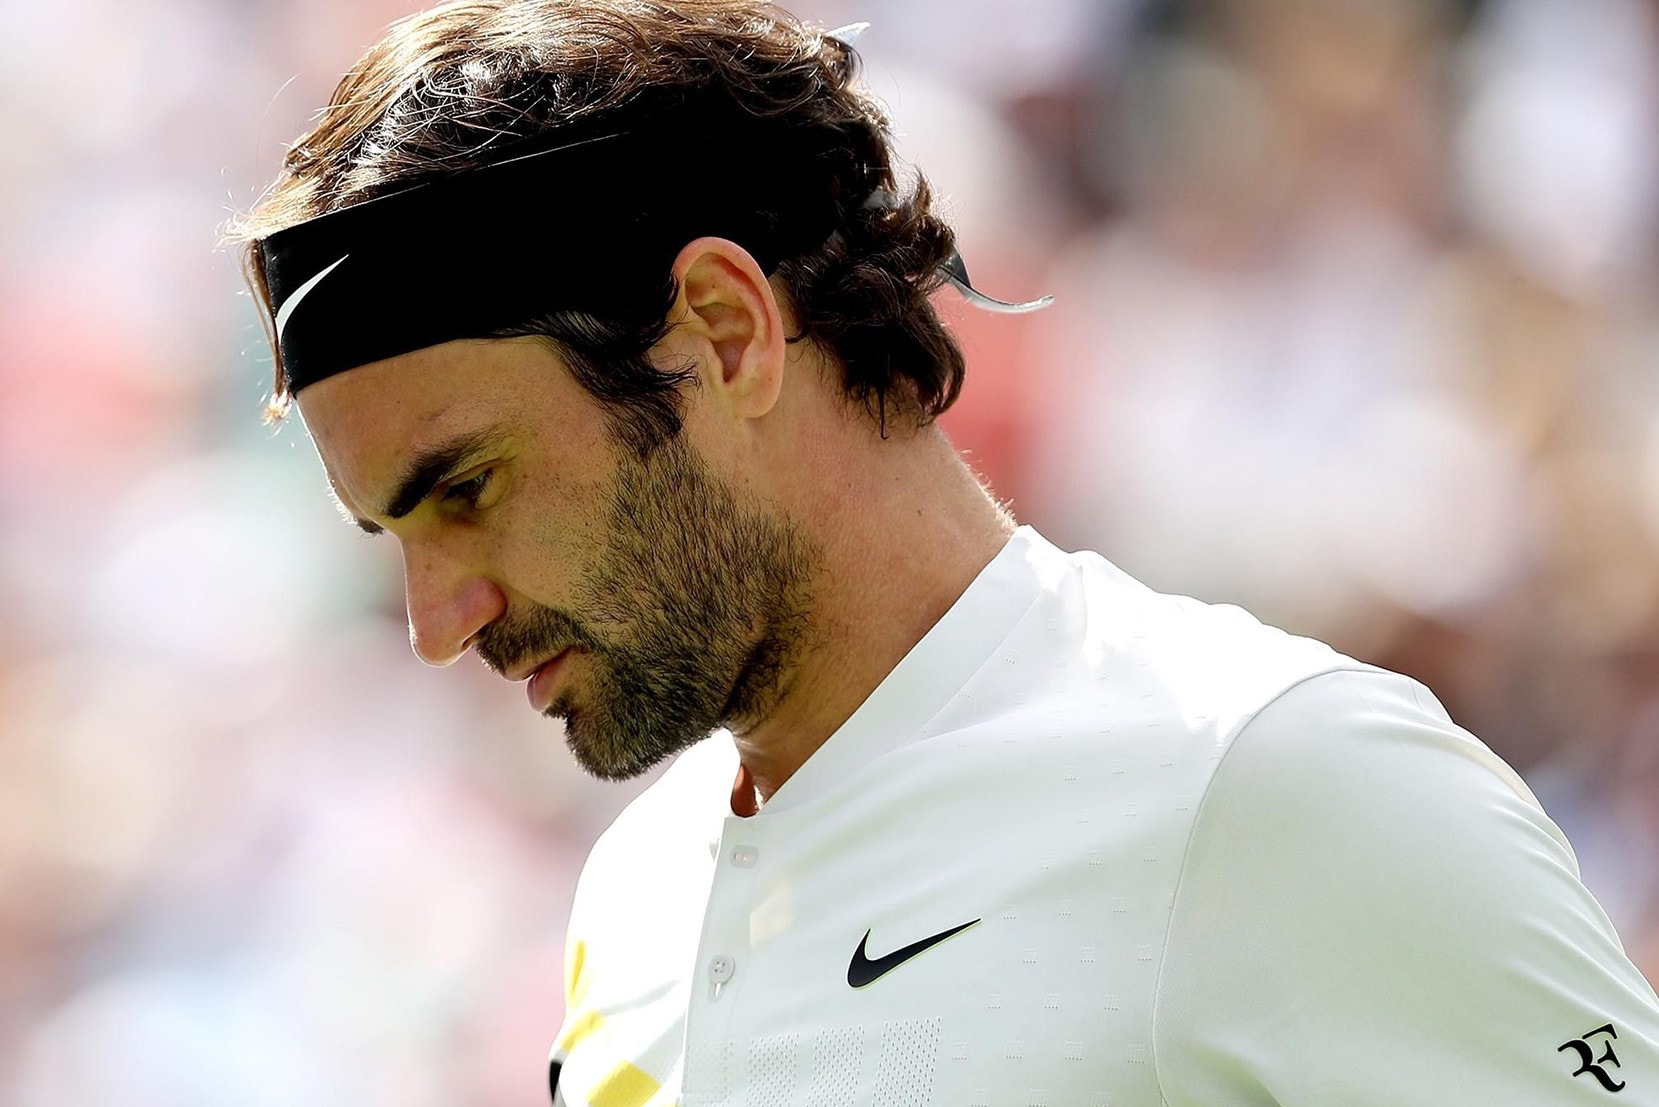 Roger Federer 欲從 Nike 手上奪回「RF」標記擁有權